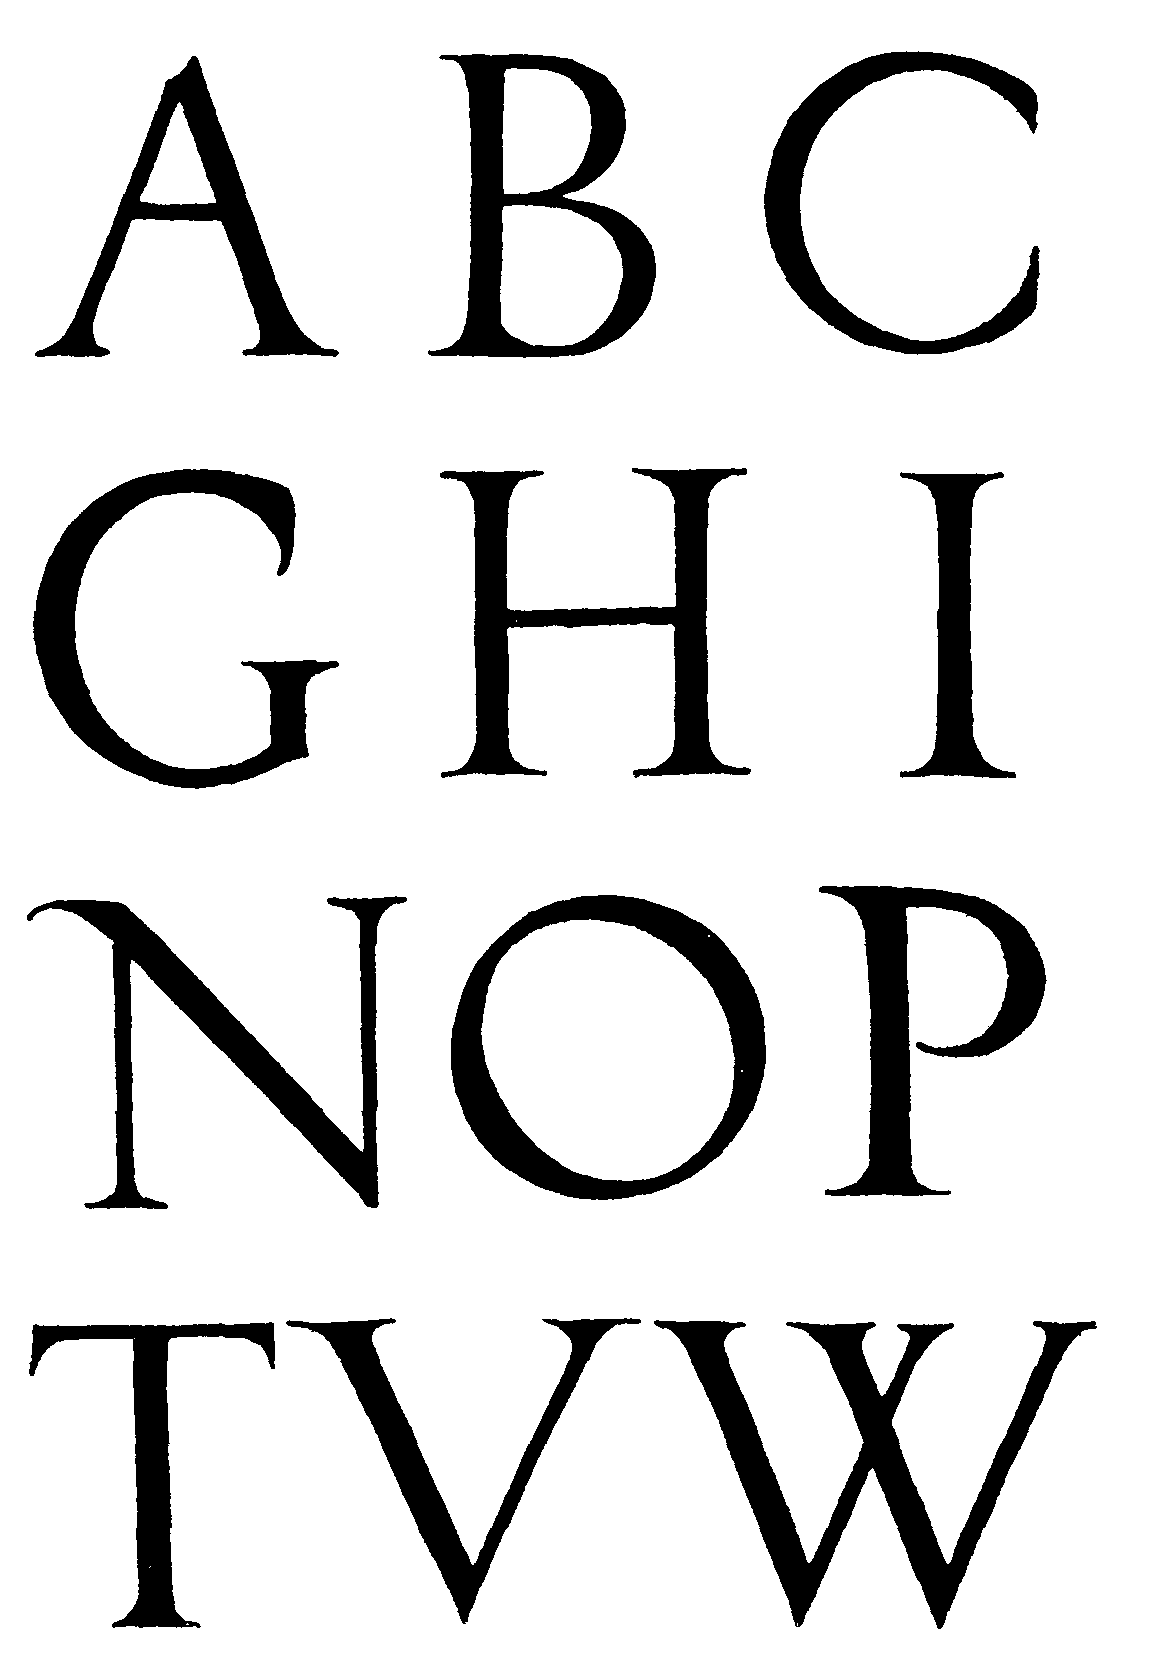 classic roman font